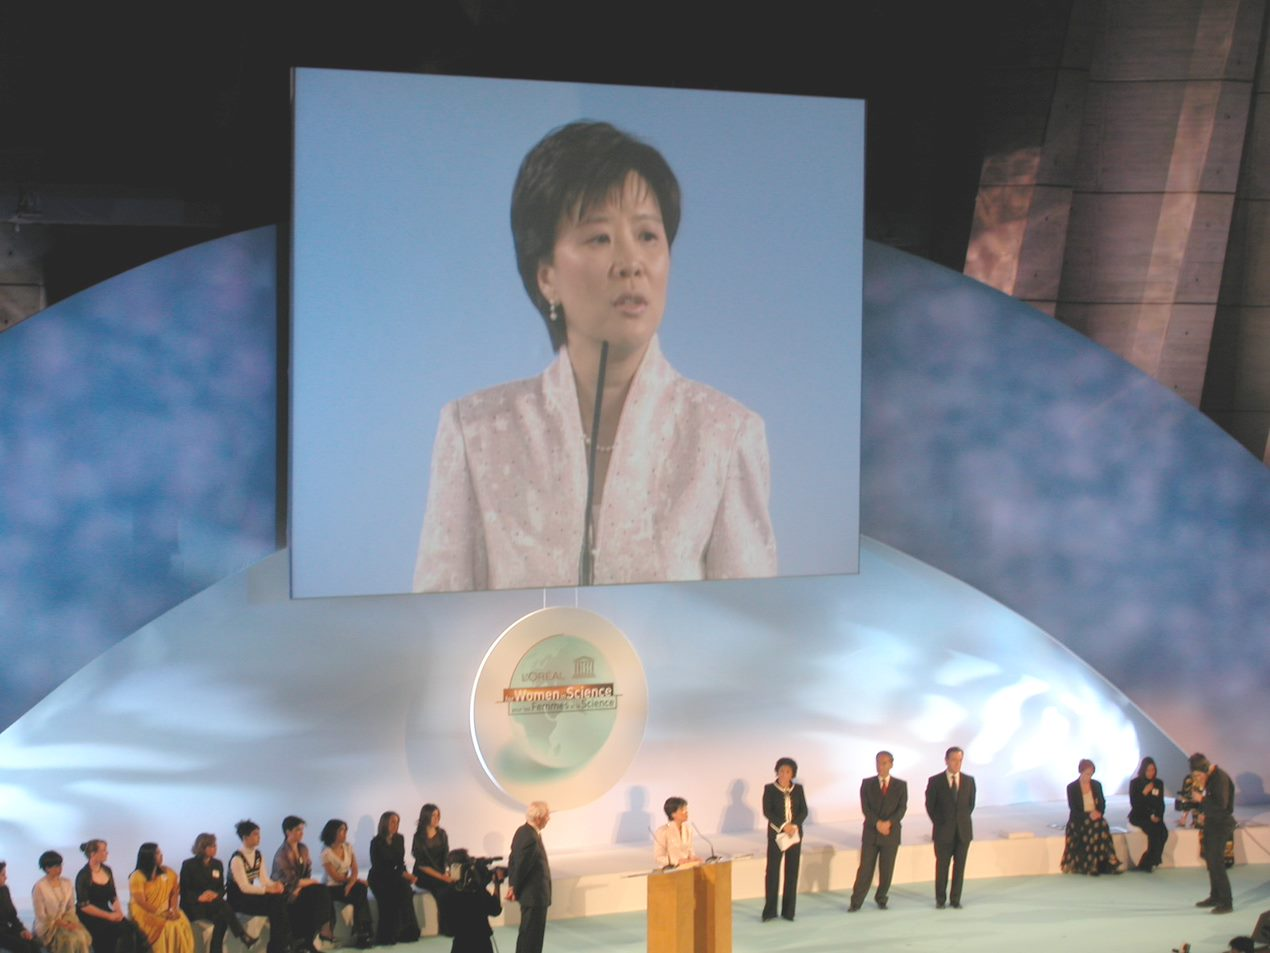 叶教授(图中屏幕显示)是首位获得欧莱雅联合国教科文组织颁发世界傑出女科学家成就奖的中国女生物科学家。